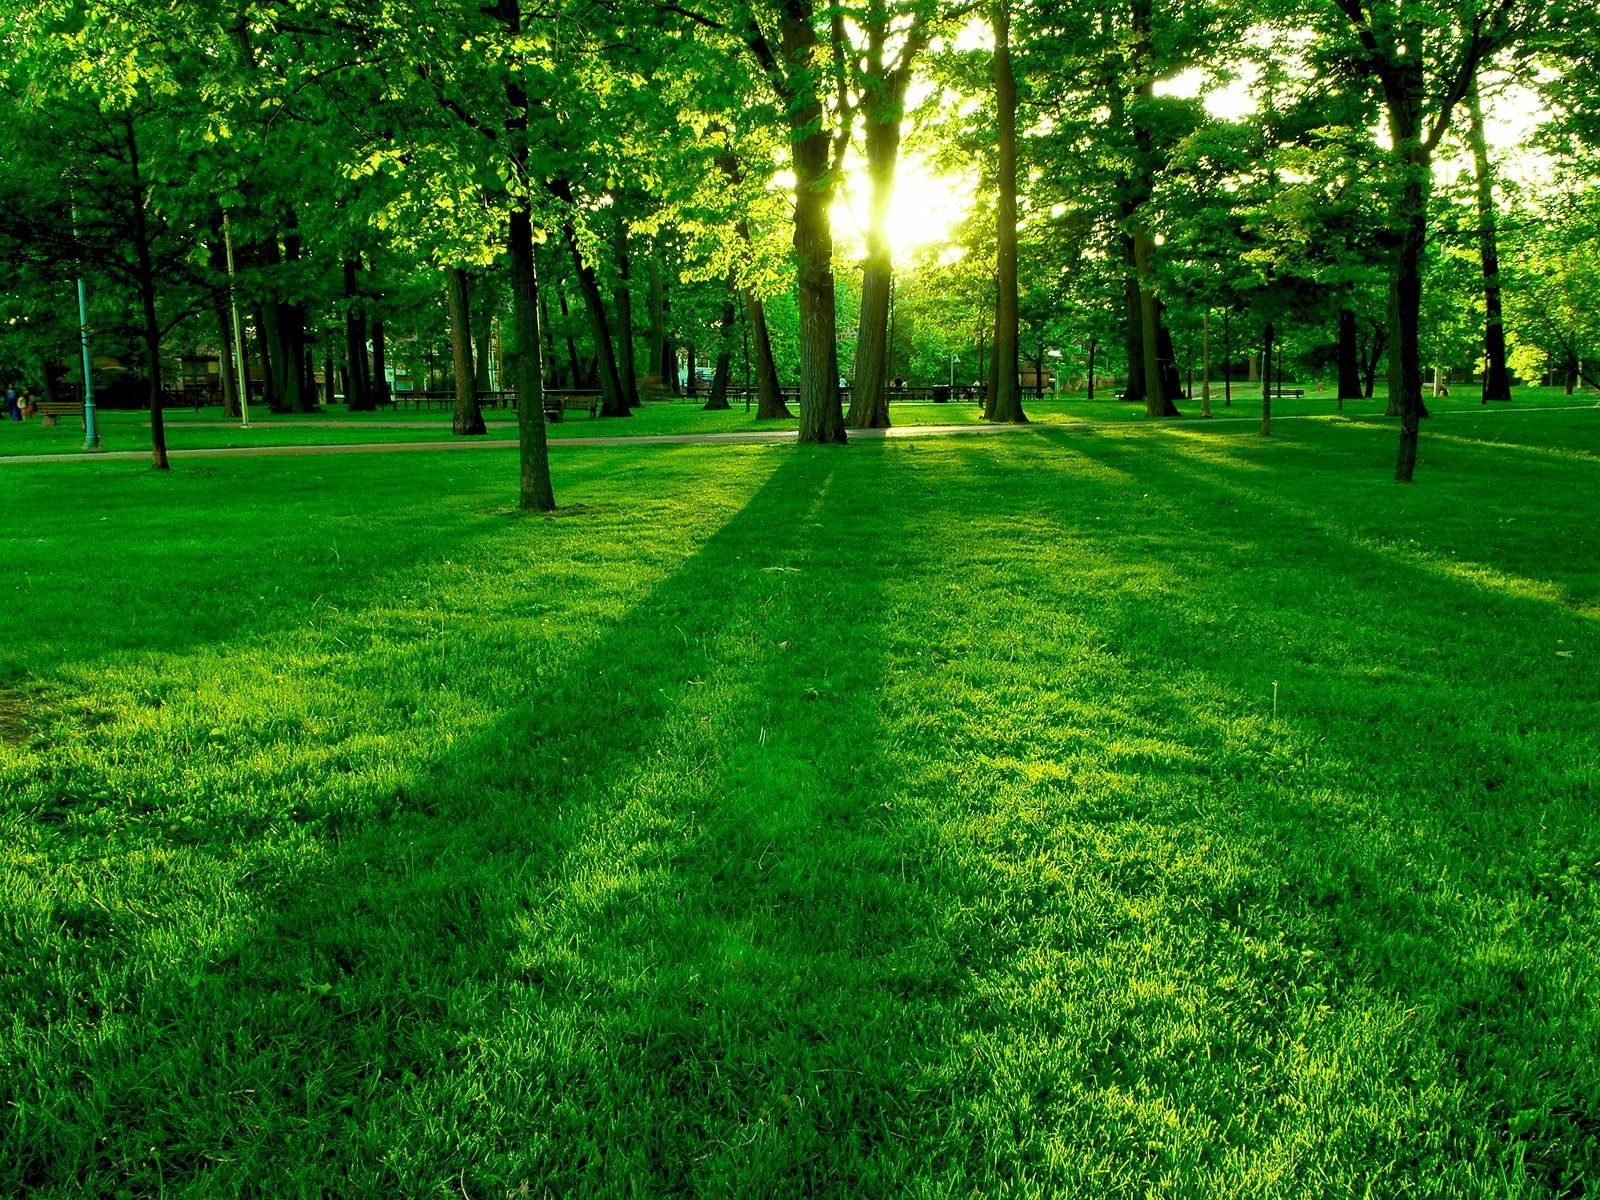 Hình nền thiên nhiên màu xanh lá cây sẽ đem lại cho bạn cảm giác thư thái và bình yên. Với khung cảnh thiên nhiên xanh tươi và trong lành, hình nền sẽ giúp bạn tắt cái nhìn trầm tư và tìm lại sự bình yên trong cuộc sống của mình. Nếu bạn muốn cảm nhận những vẻ đẹp hữu tình của thiên nhiên, hình nền này là một lựa chọn tuyệt vời.